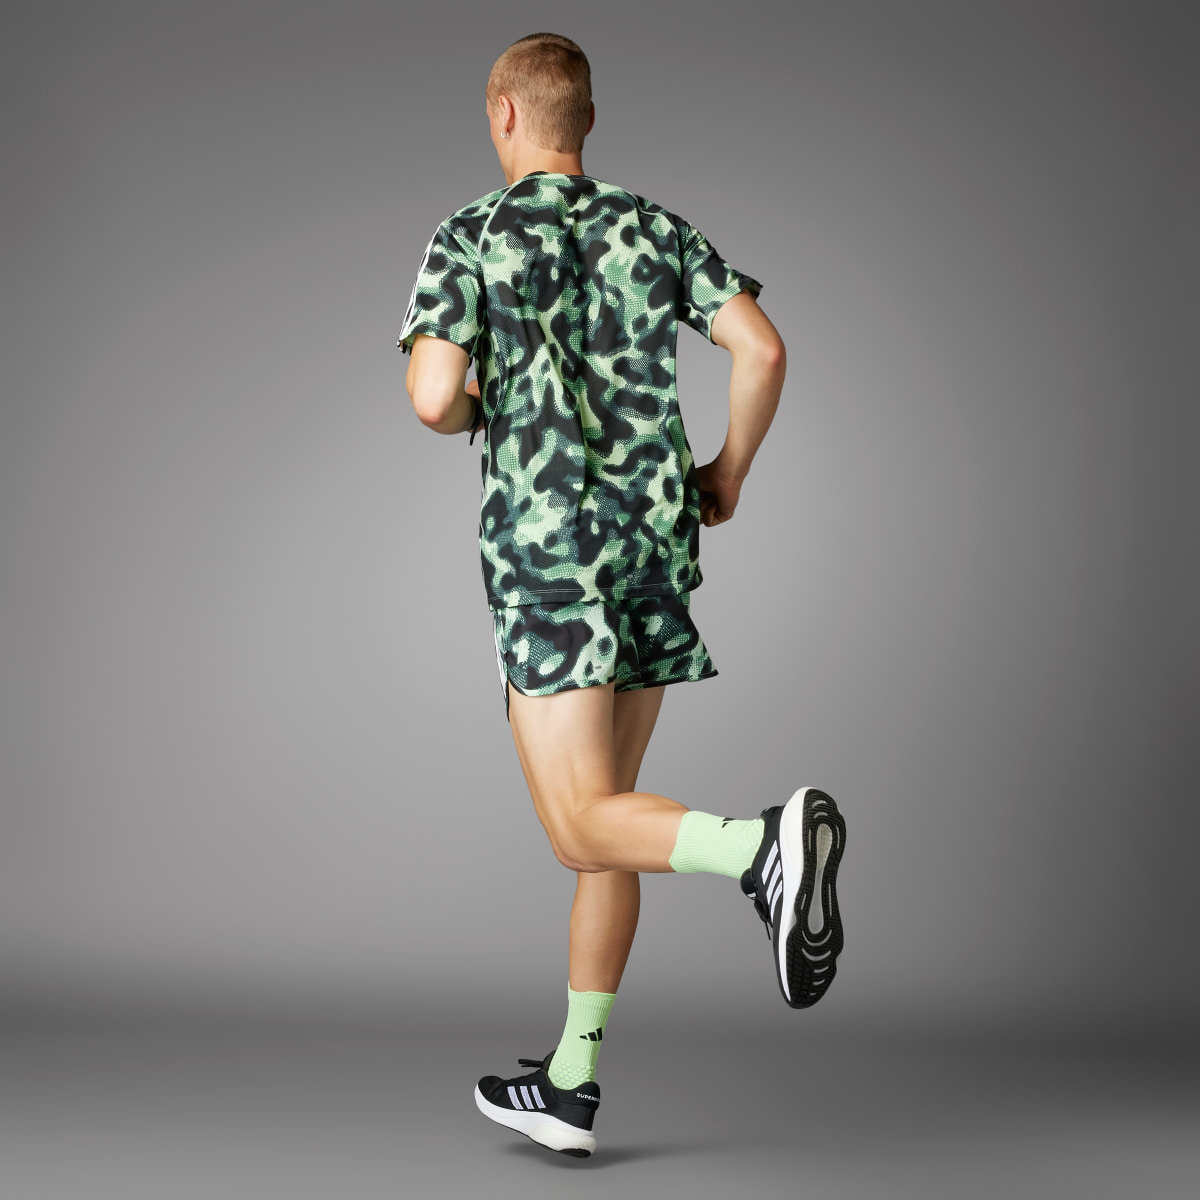 Adidas Own the Run 3-Stripes Allover Print Shorts. 4